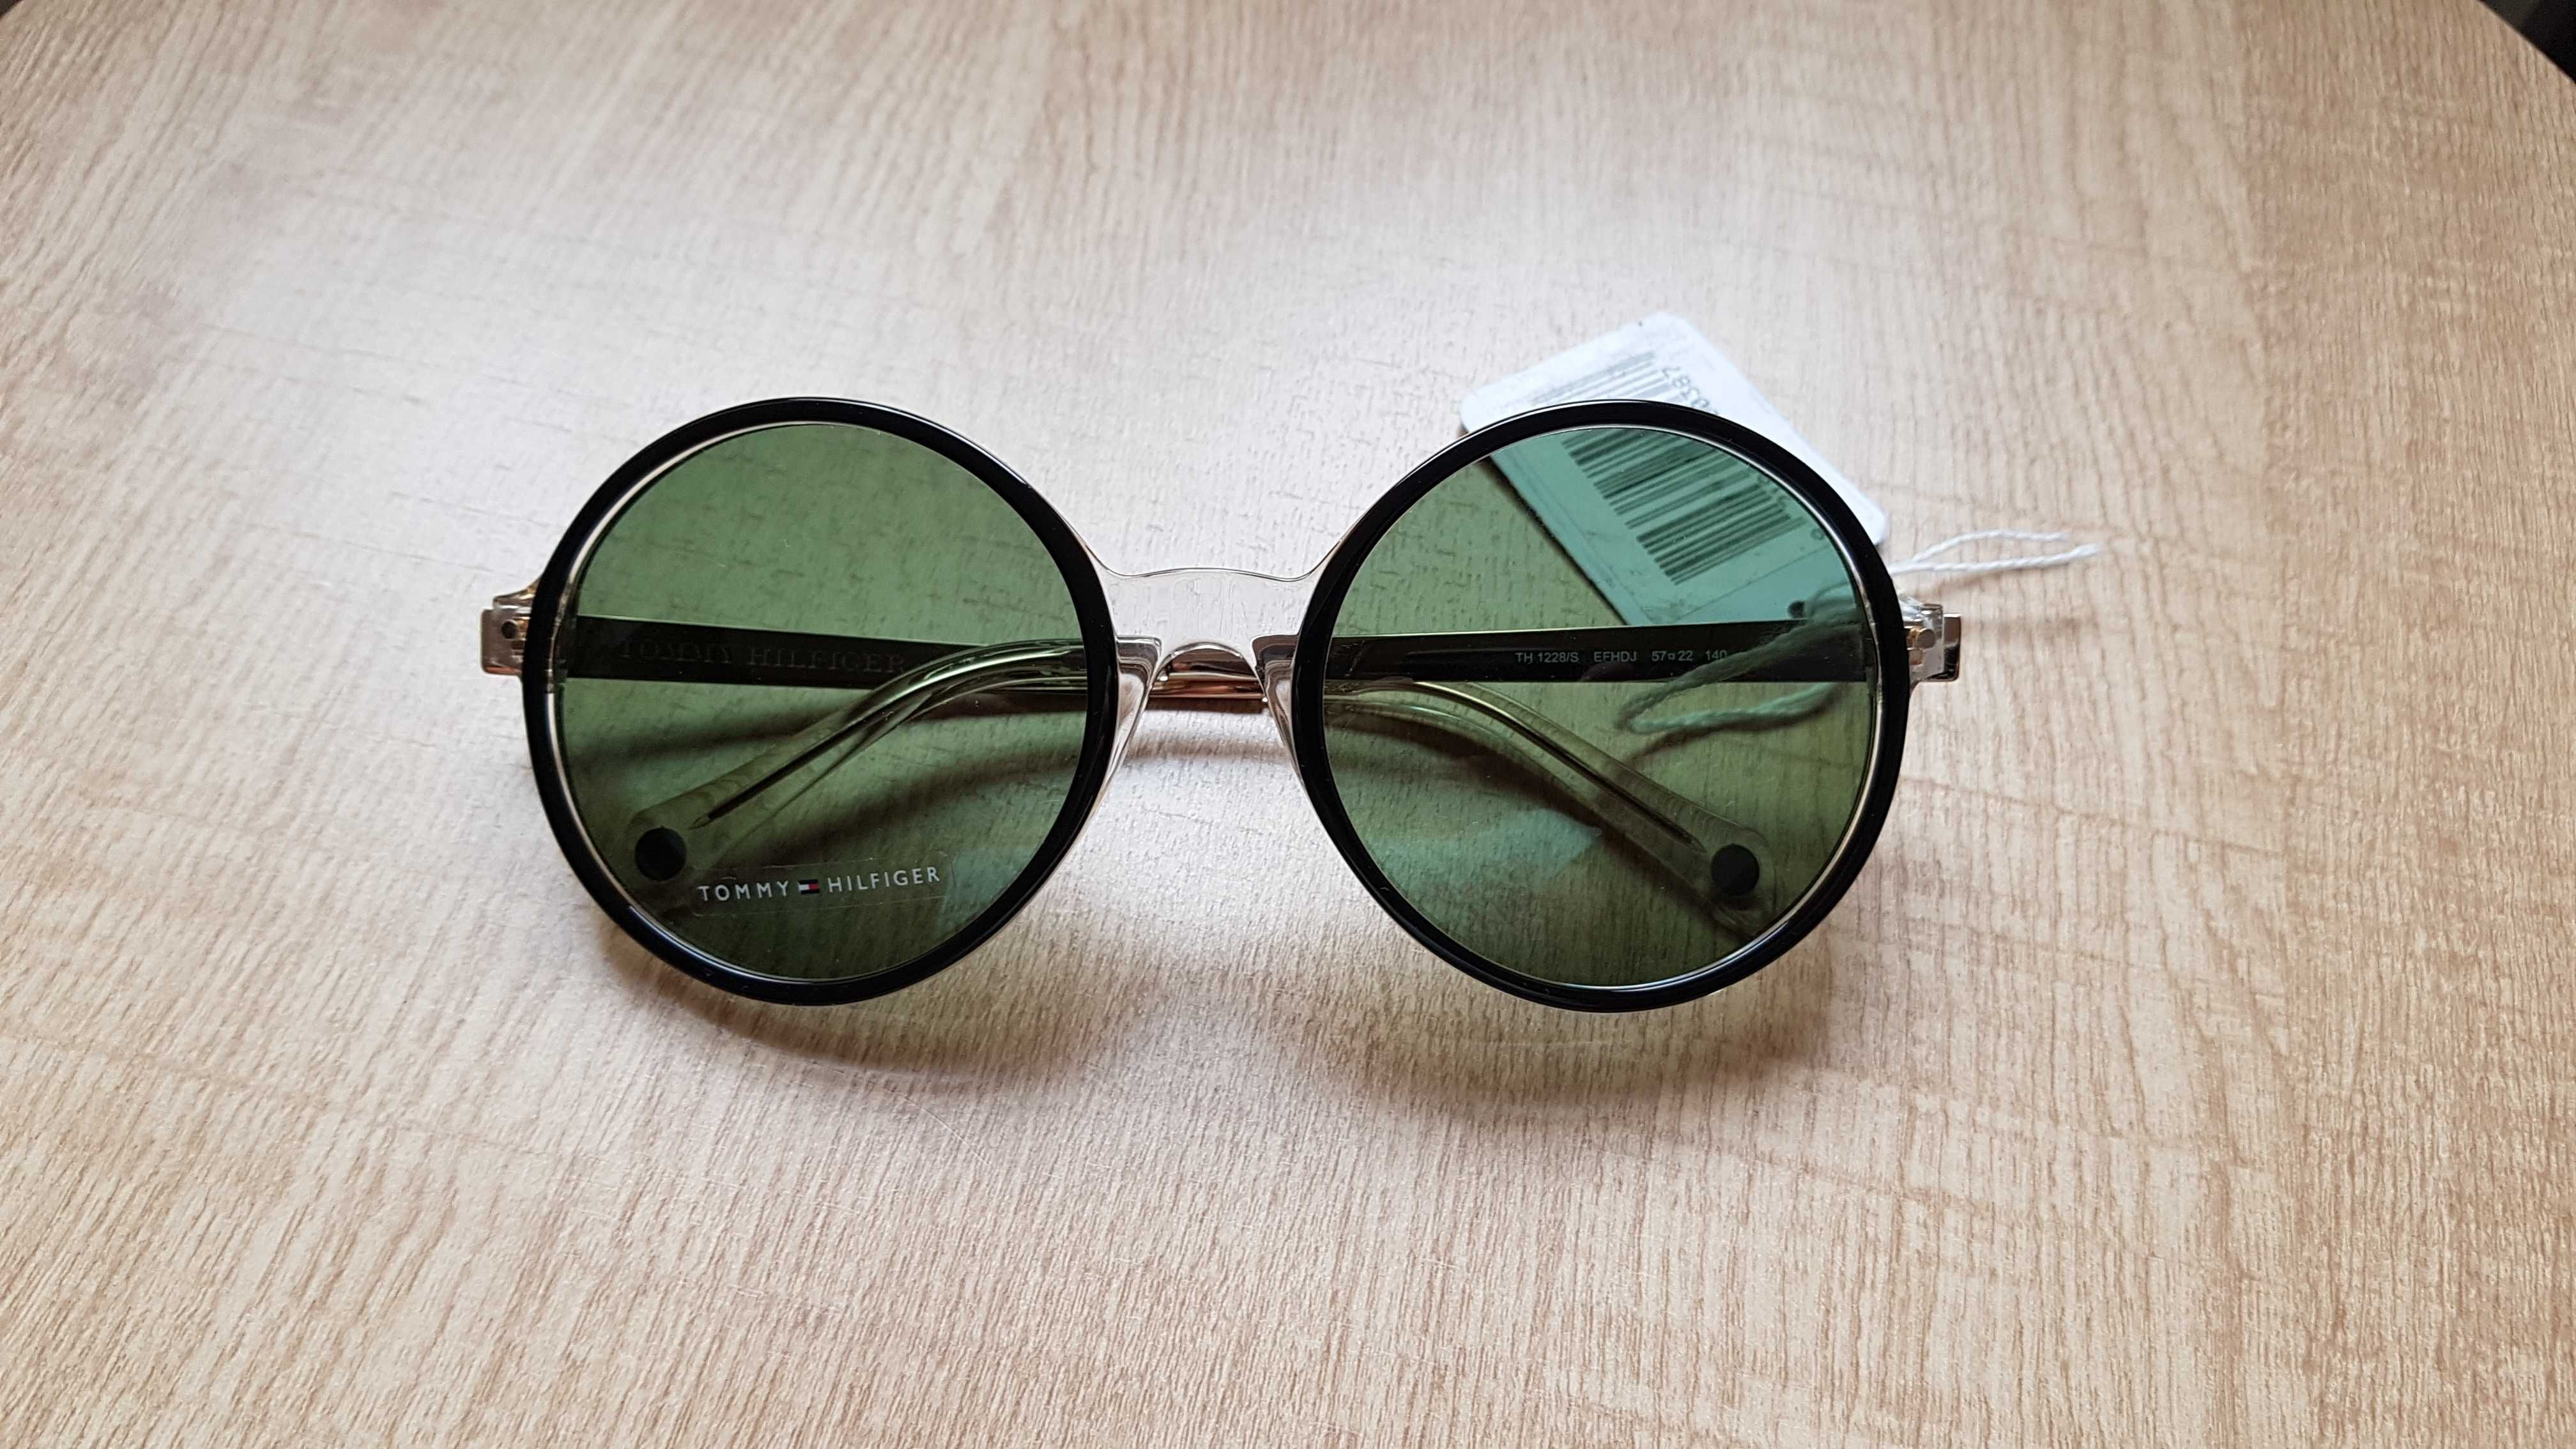 Okulary Tommy Hilfiger przeciwsłoneczne